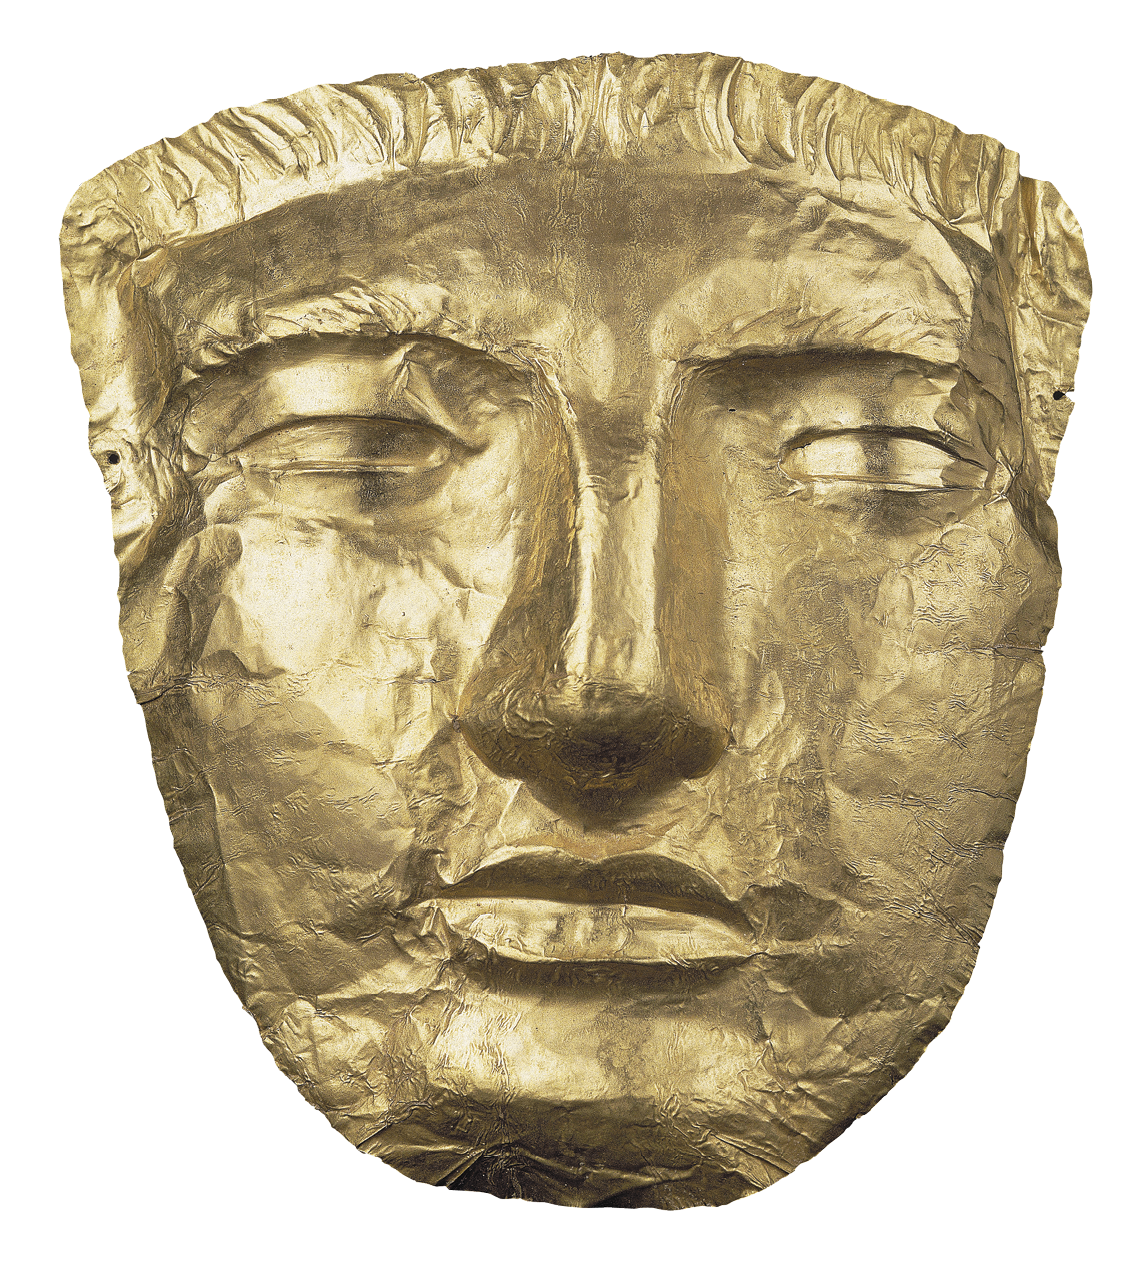 Fotografia. Máscara feita de metal dourado com um relevo formando um rosto de feições masculinas, com sobrancelhas grossas, nariz reto e boca fechada.